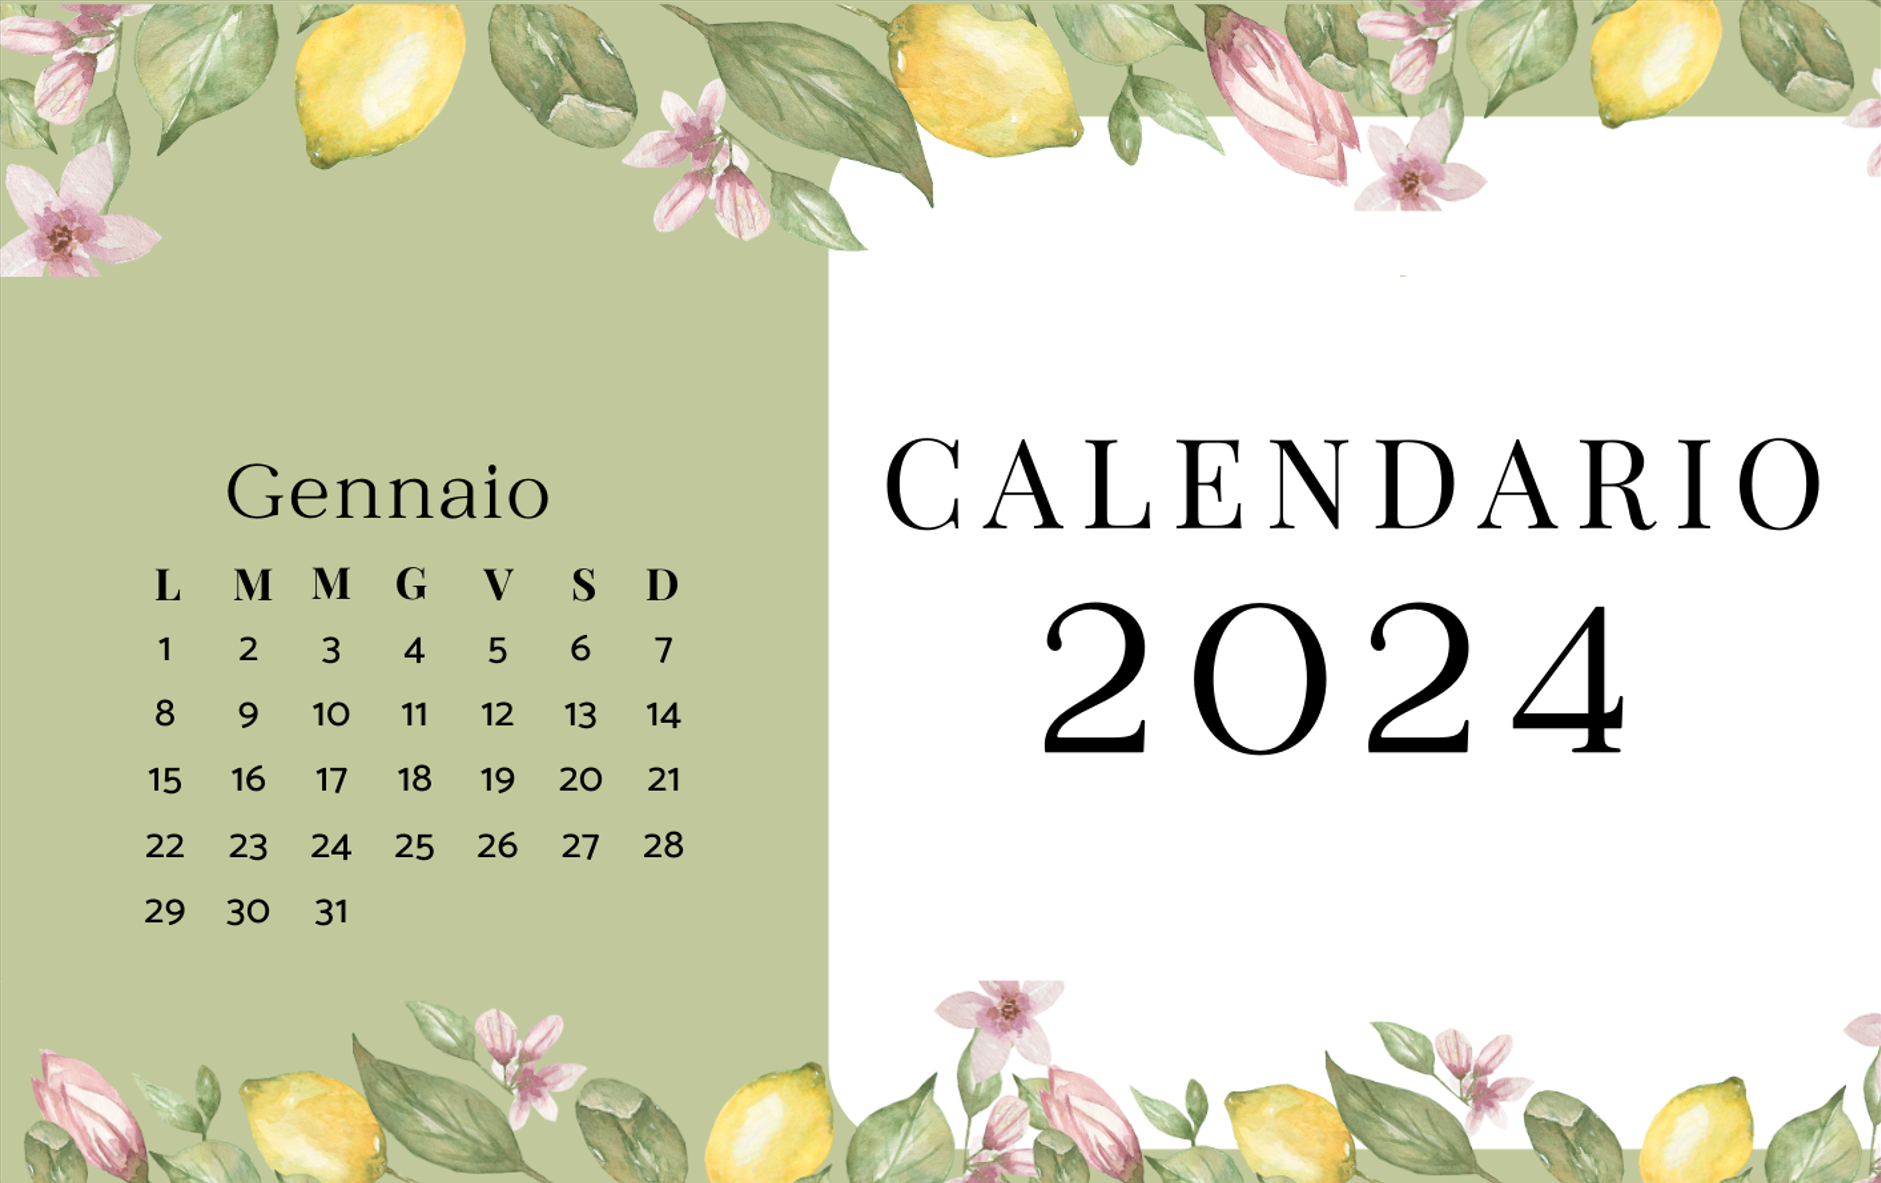 Calendario 2024 da muro caselle e note